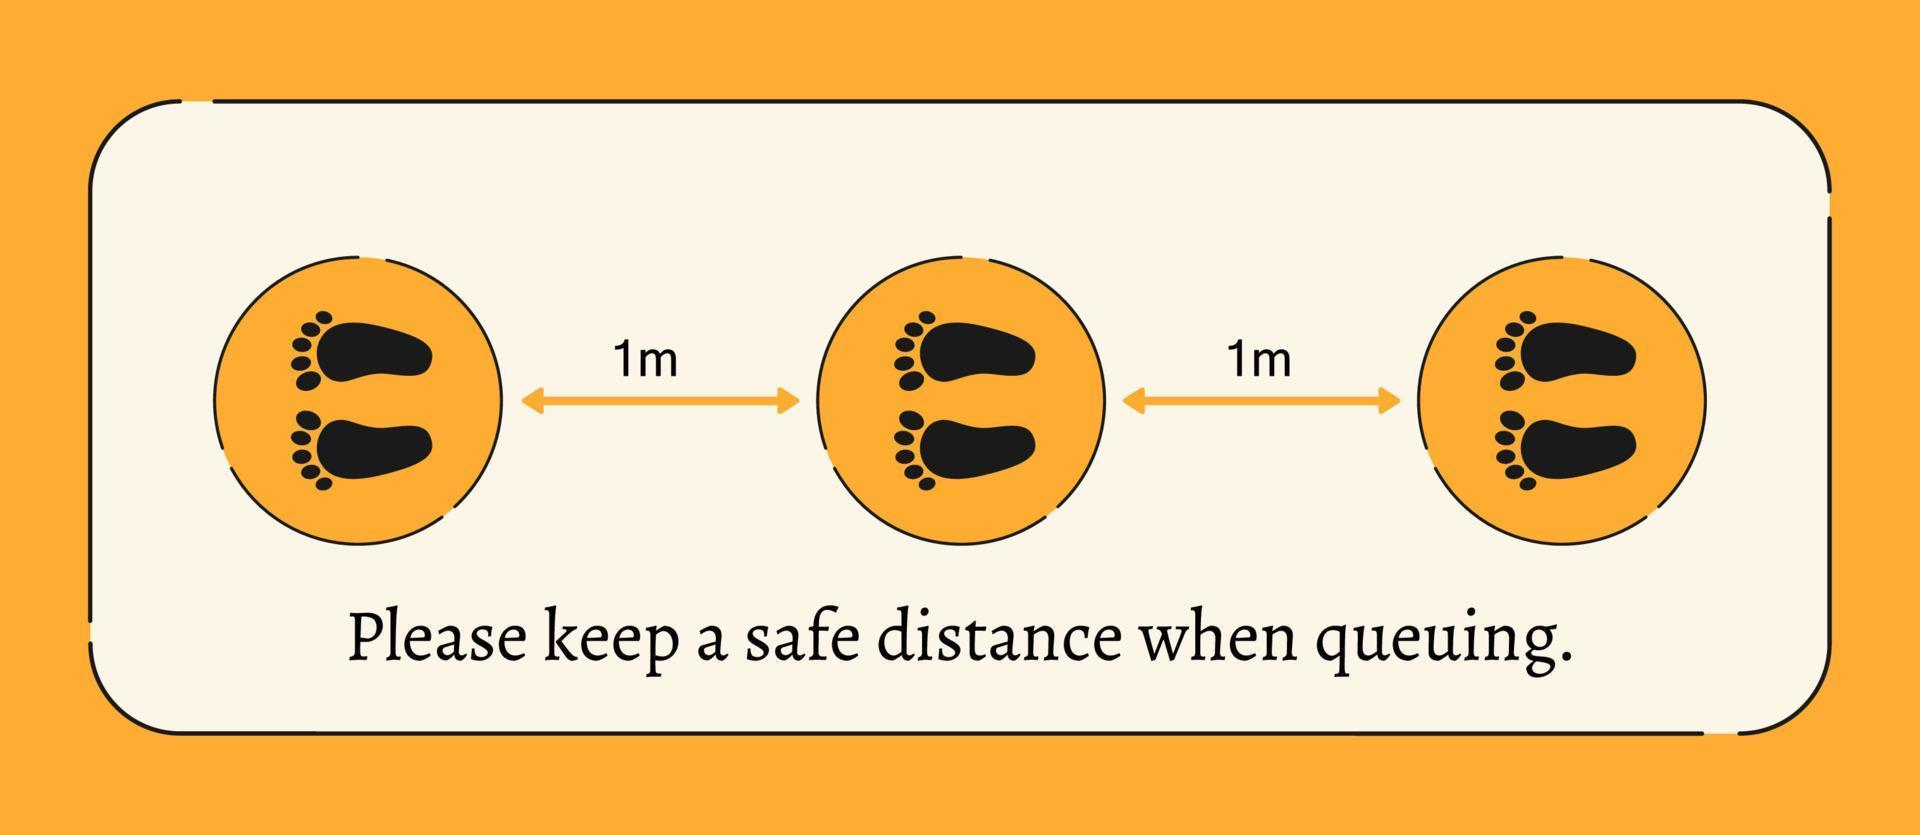 mantener un seguro distancia cuando haciendo cola, huella firmar en amarillo y negro vector